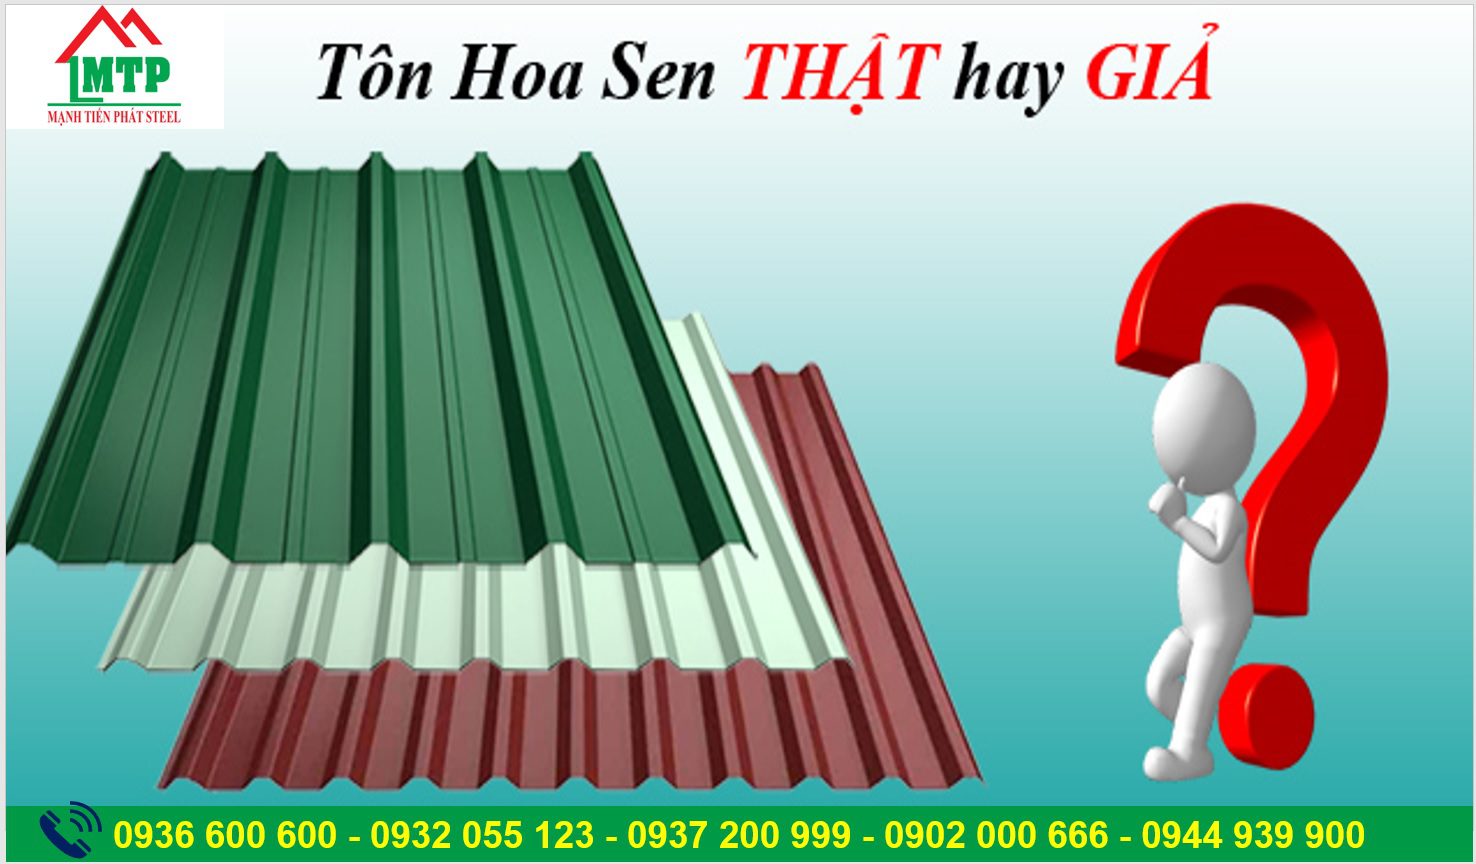 Phan Biet Ton Hoa Sen That Gia